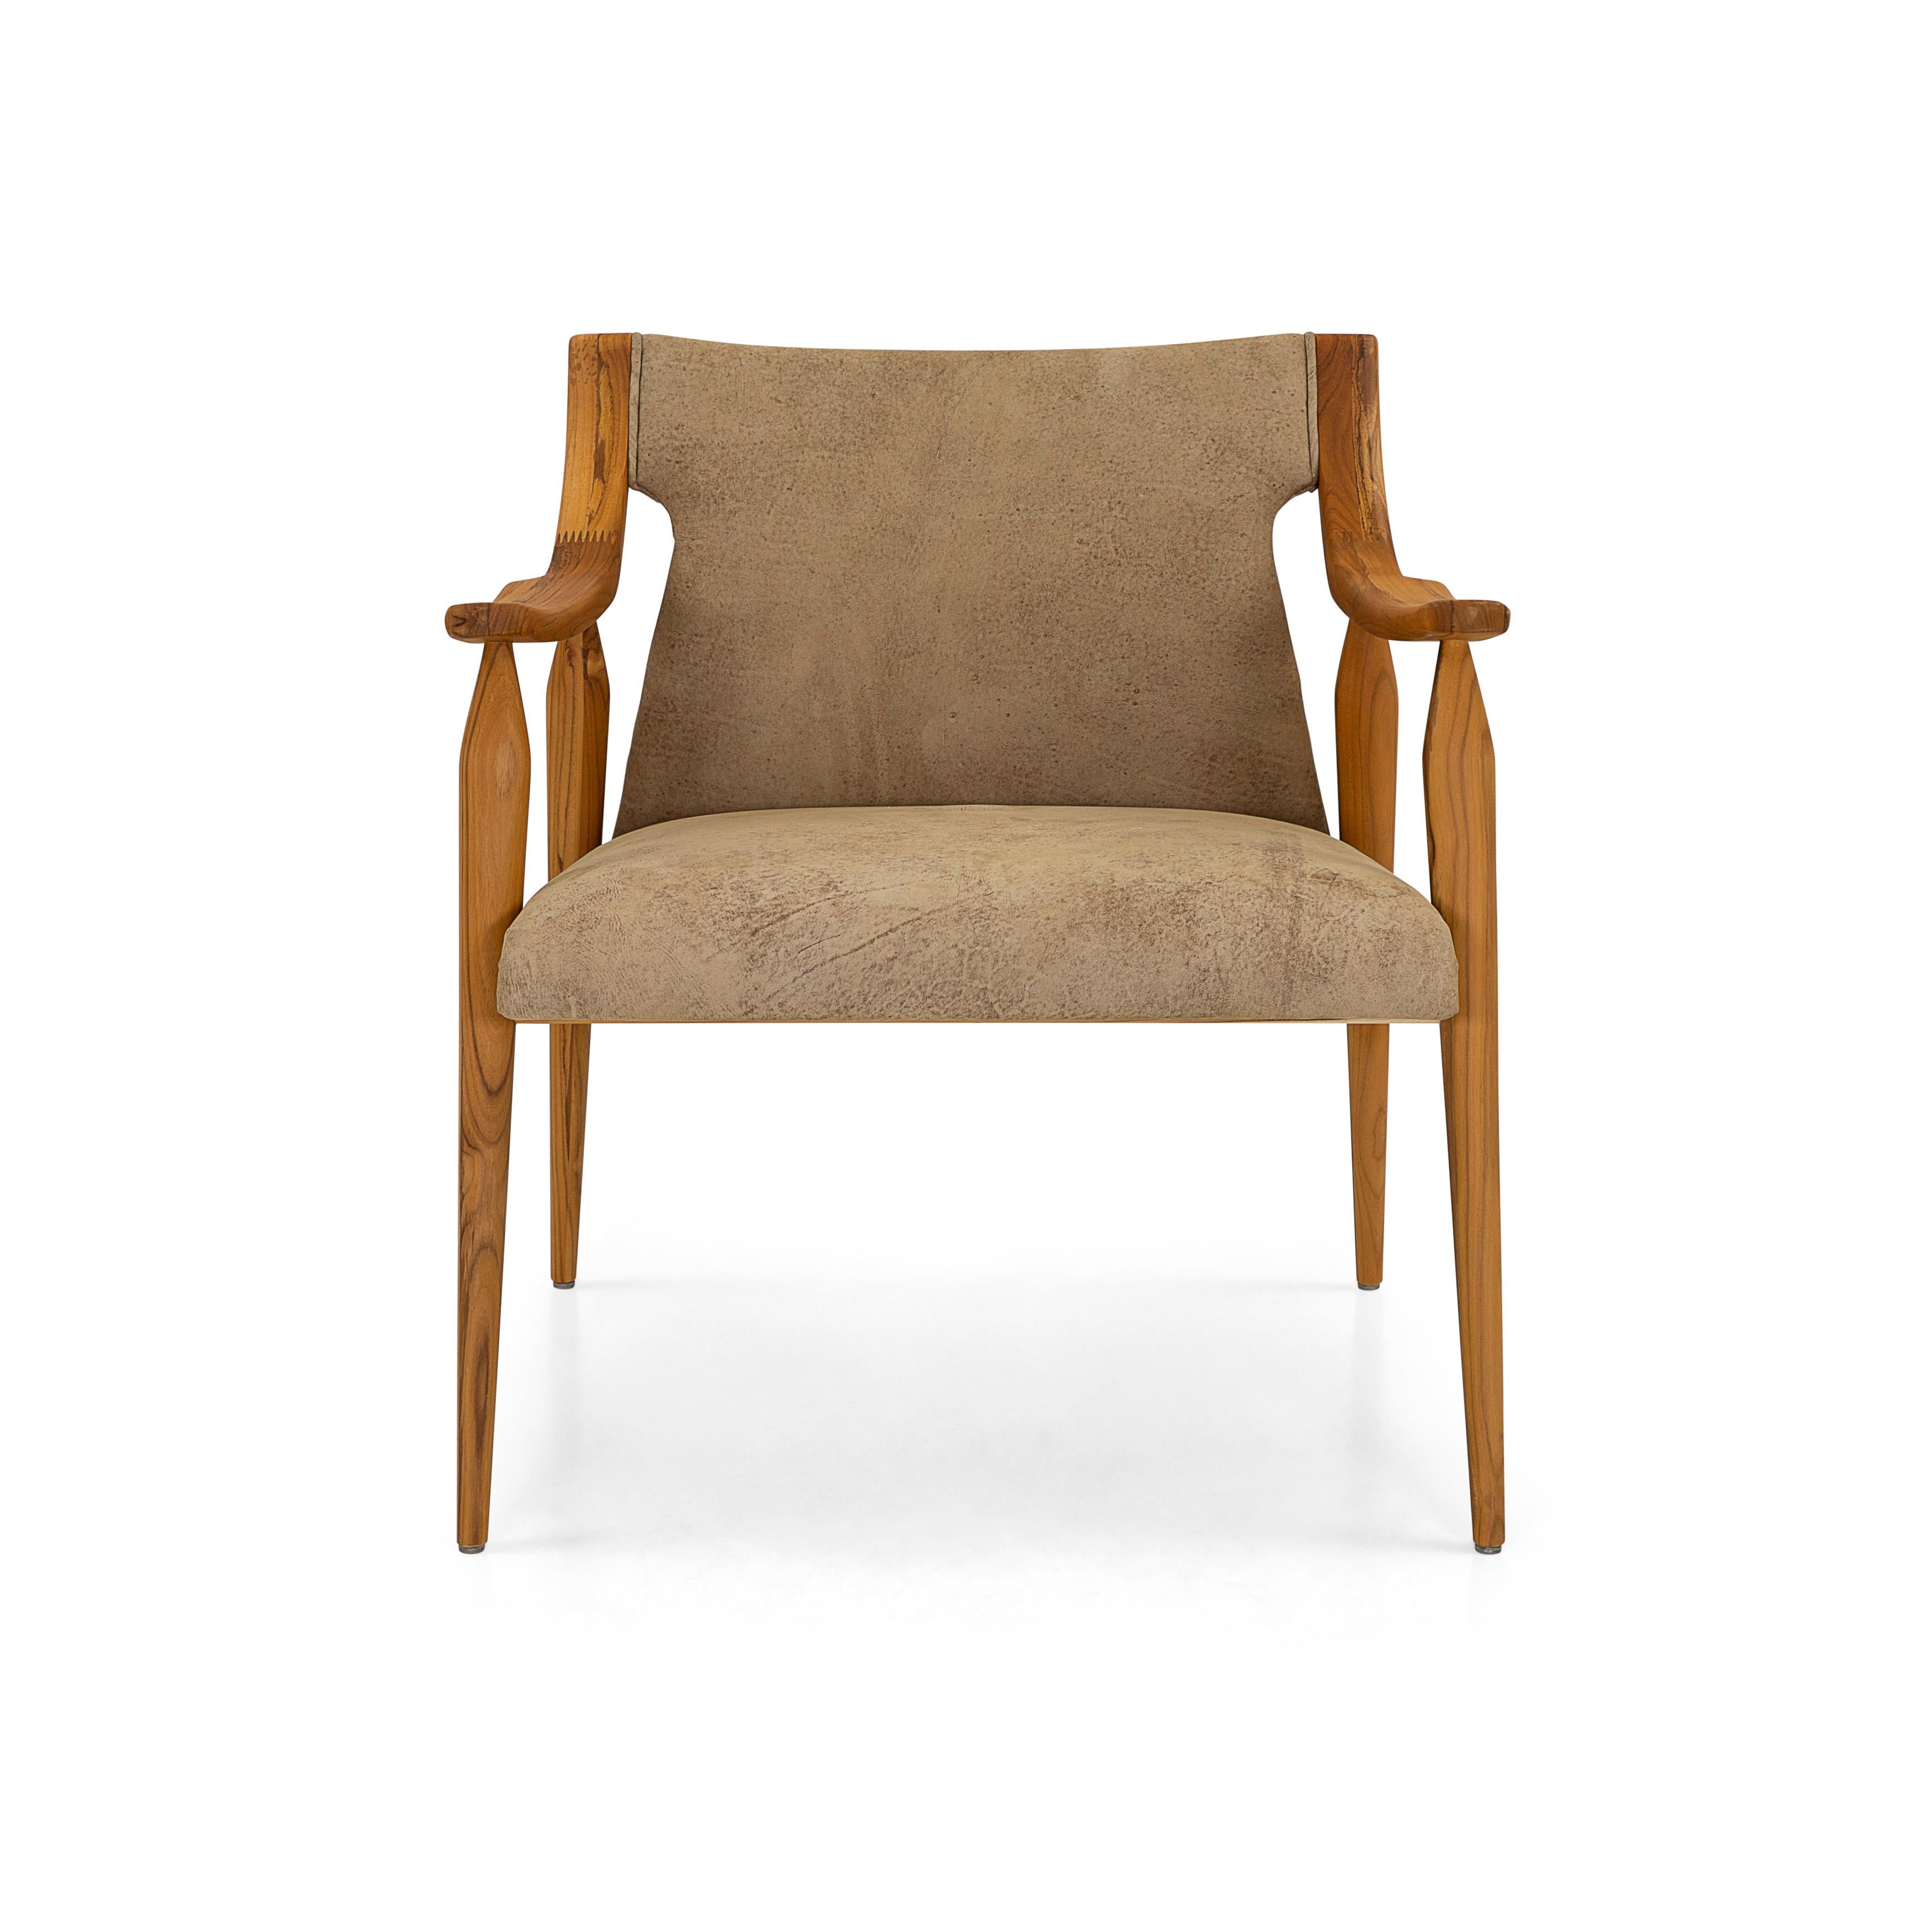 Le fauteuil Mince est un ajout accueillant à n'importe quelle pièce de votre décoration moderne avec ses bras incurvés et ses pieds en fuseau en finition bois de teck, et son beau cuir marron pour les coussins. Cette chaise moderne présente un